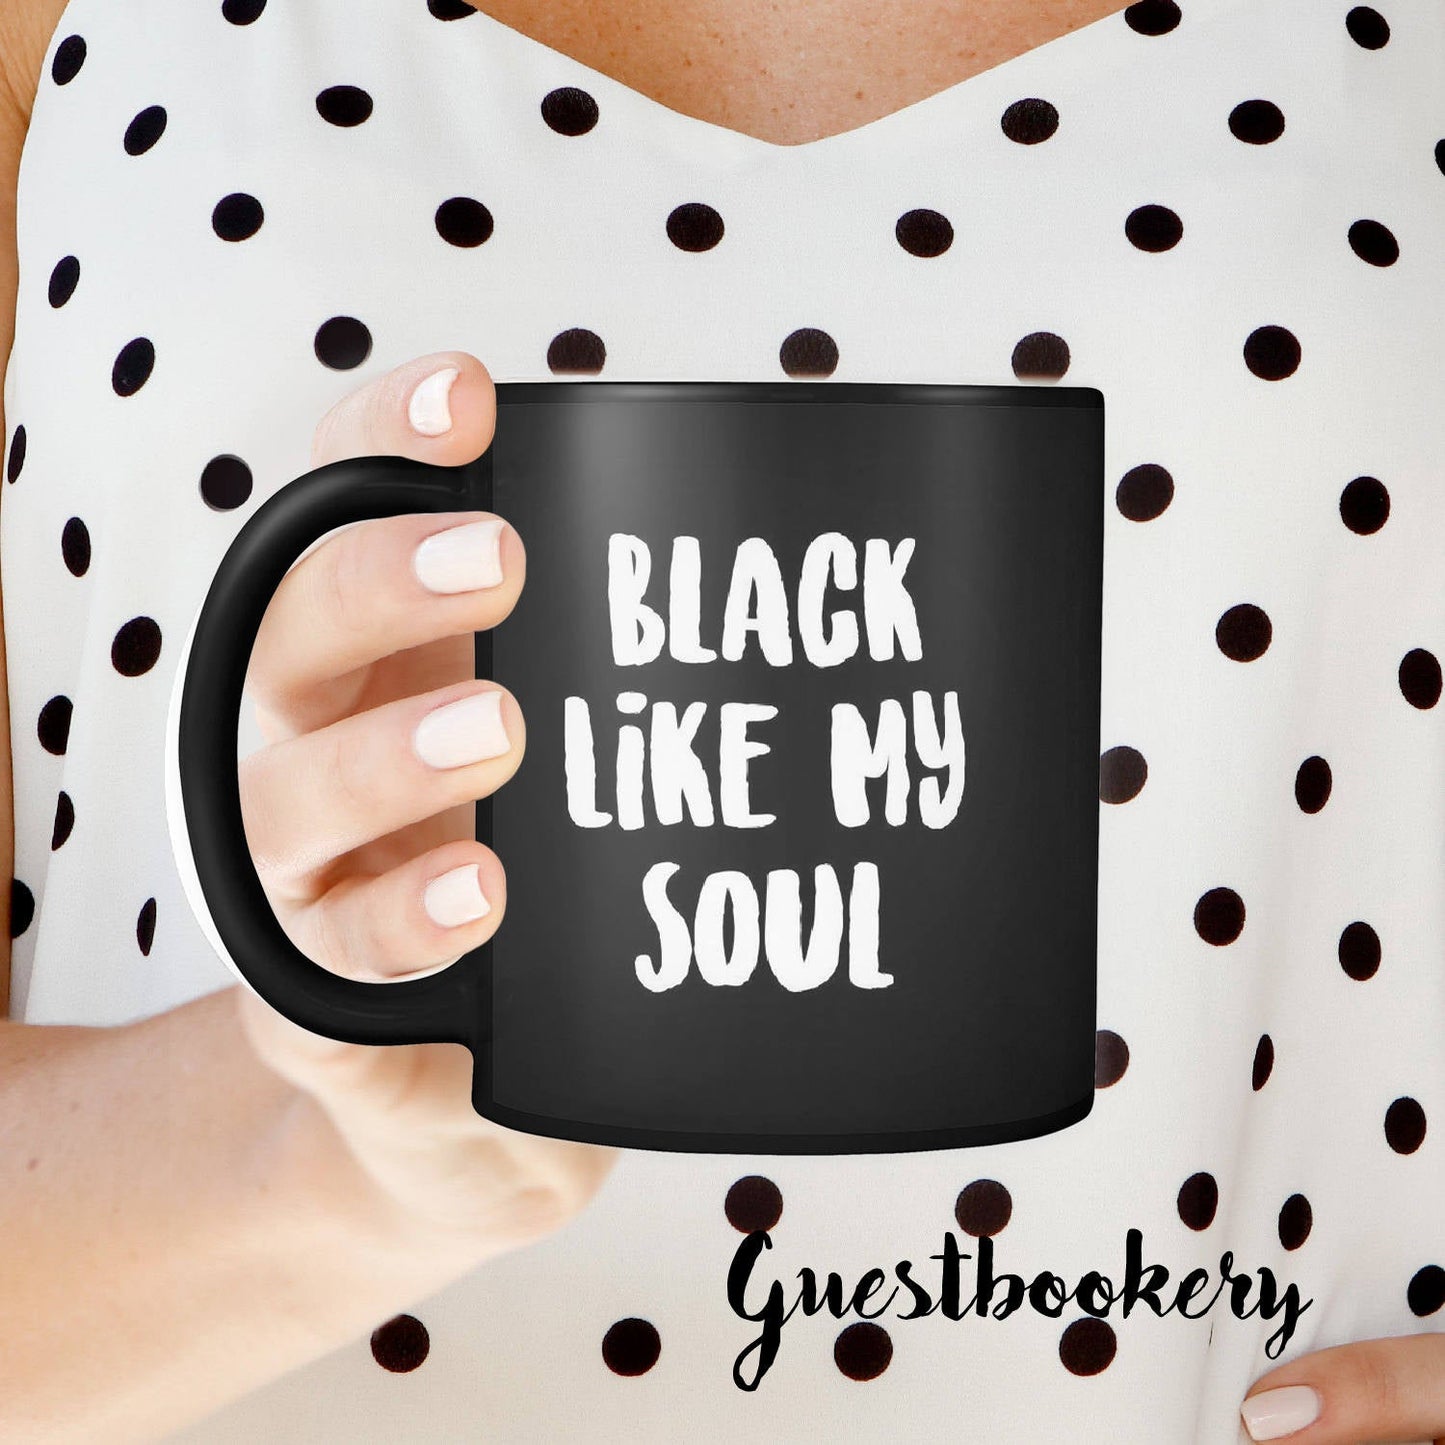 I Like My Coffee Black Like My Soul Mug